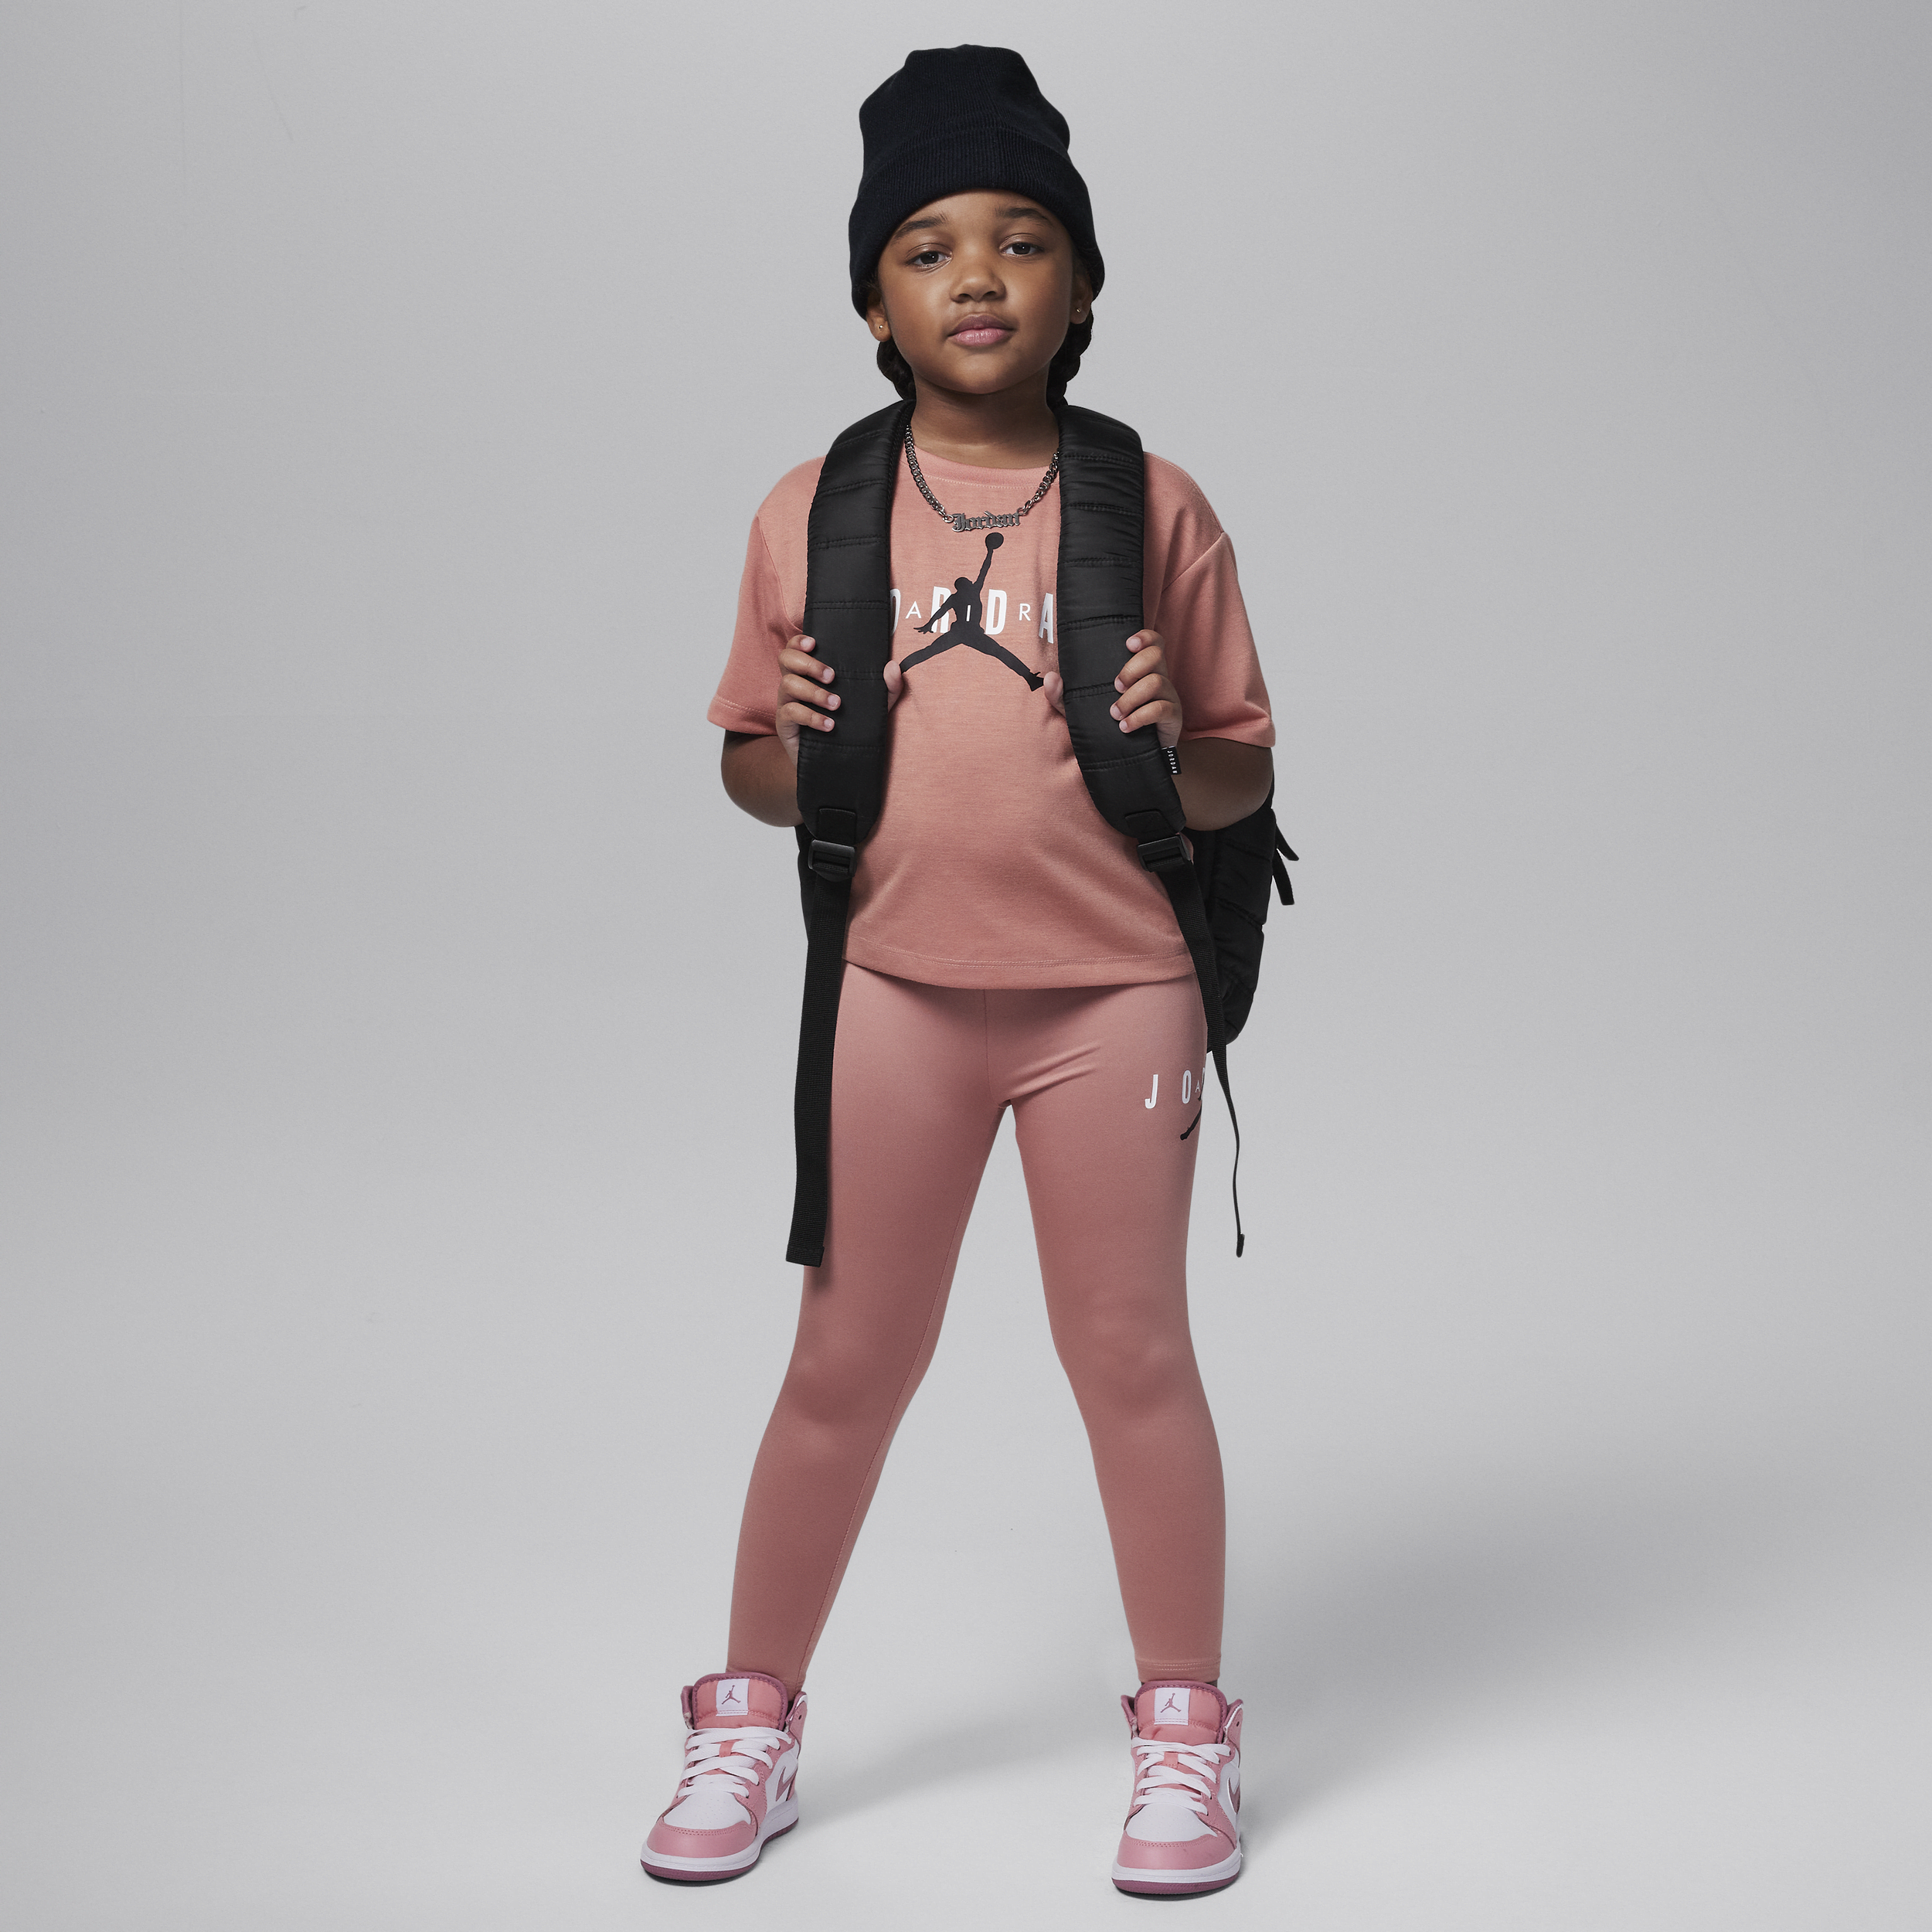 Jordan Conjunto de leggings con materiales sostenibles - Niño/a pequeño/a - Rosa